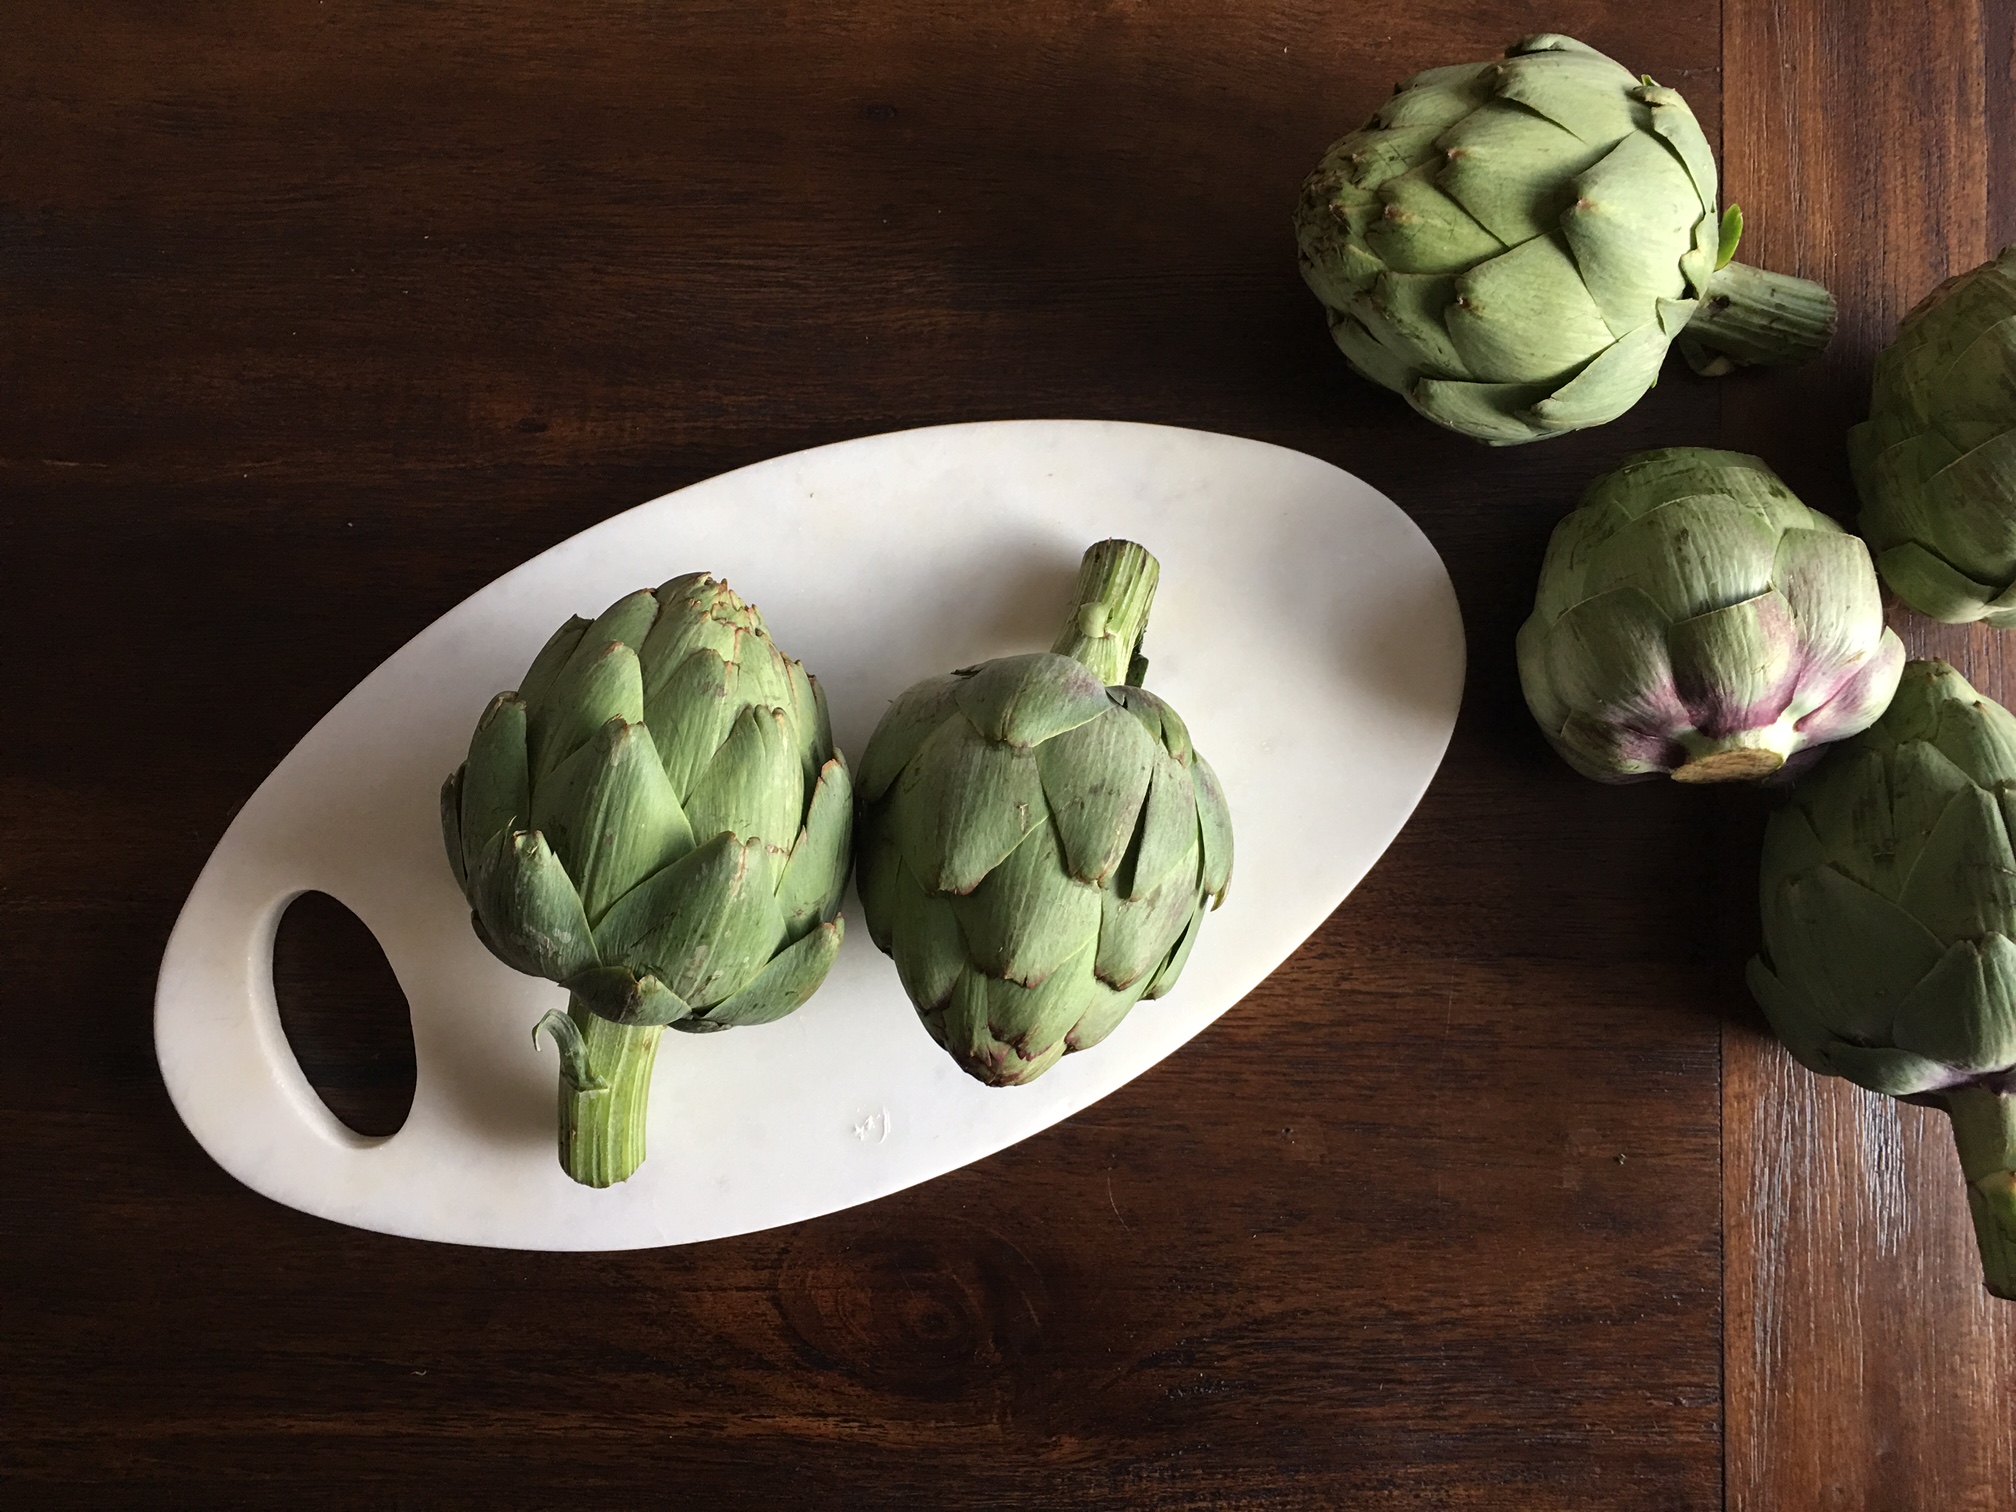 Stuffed Artichoke Recipe, Elle Baker Photography, green artichokes on white marble plate